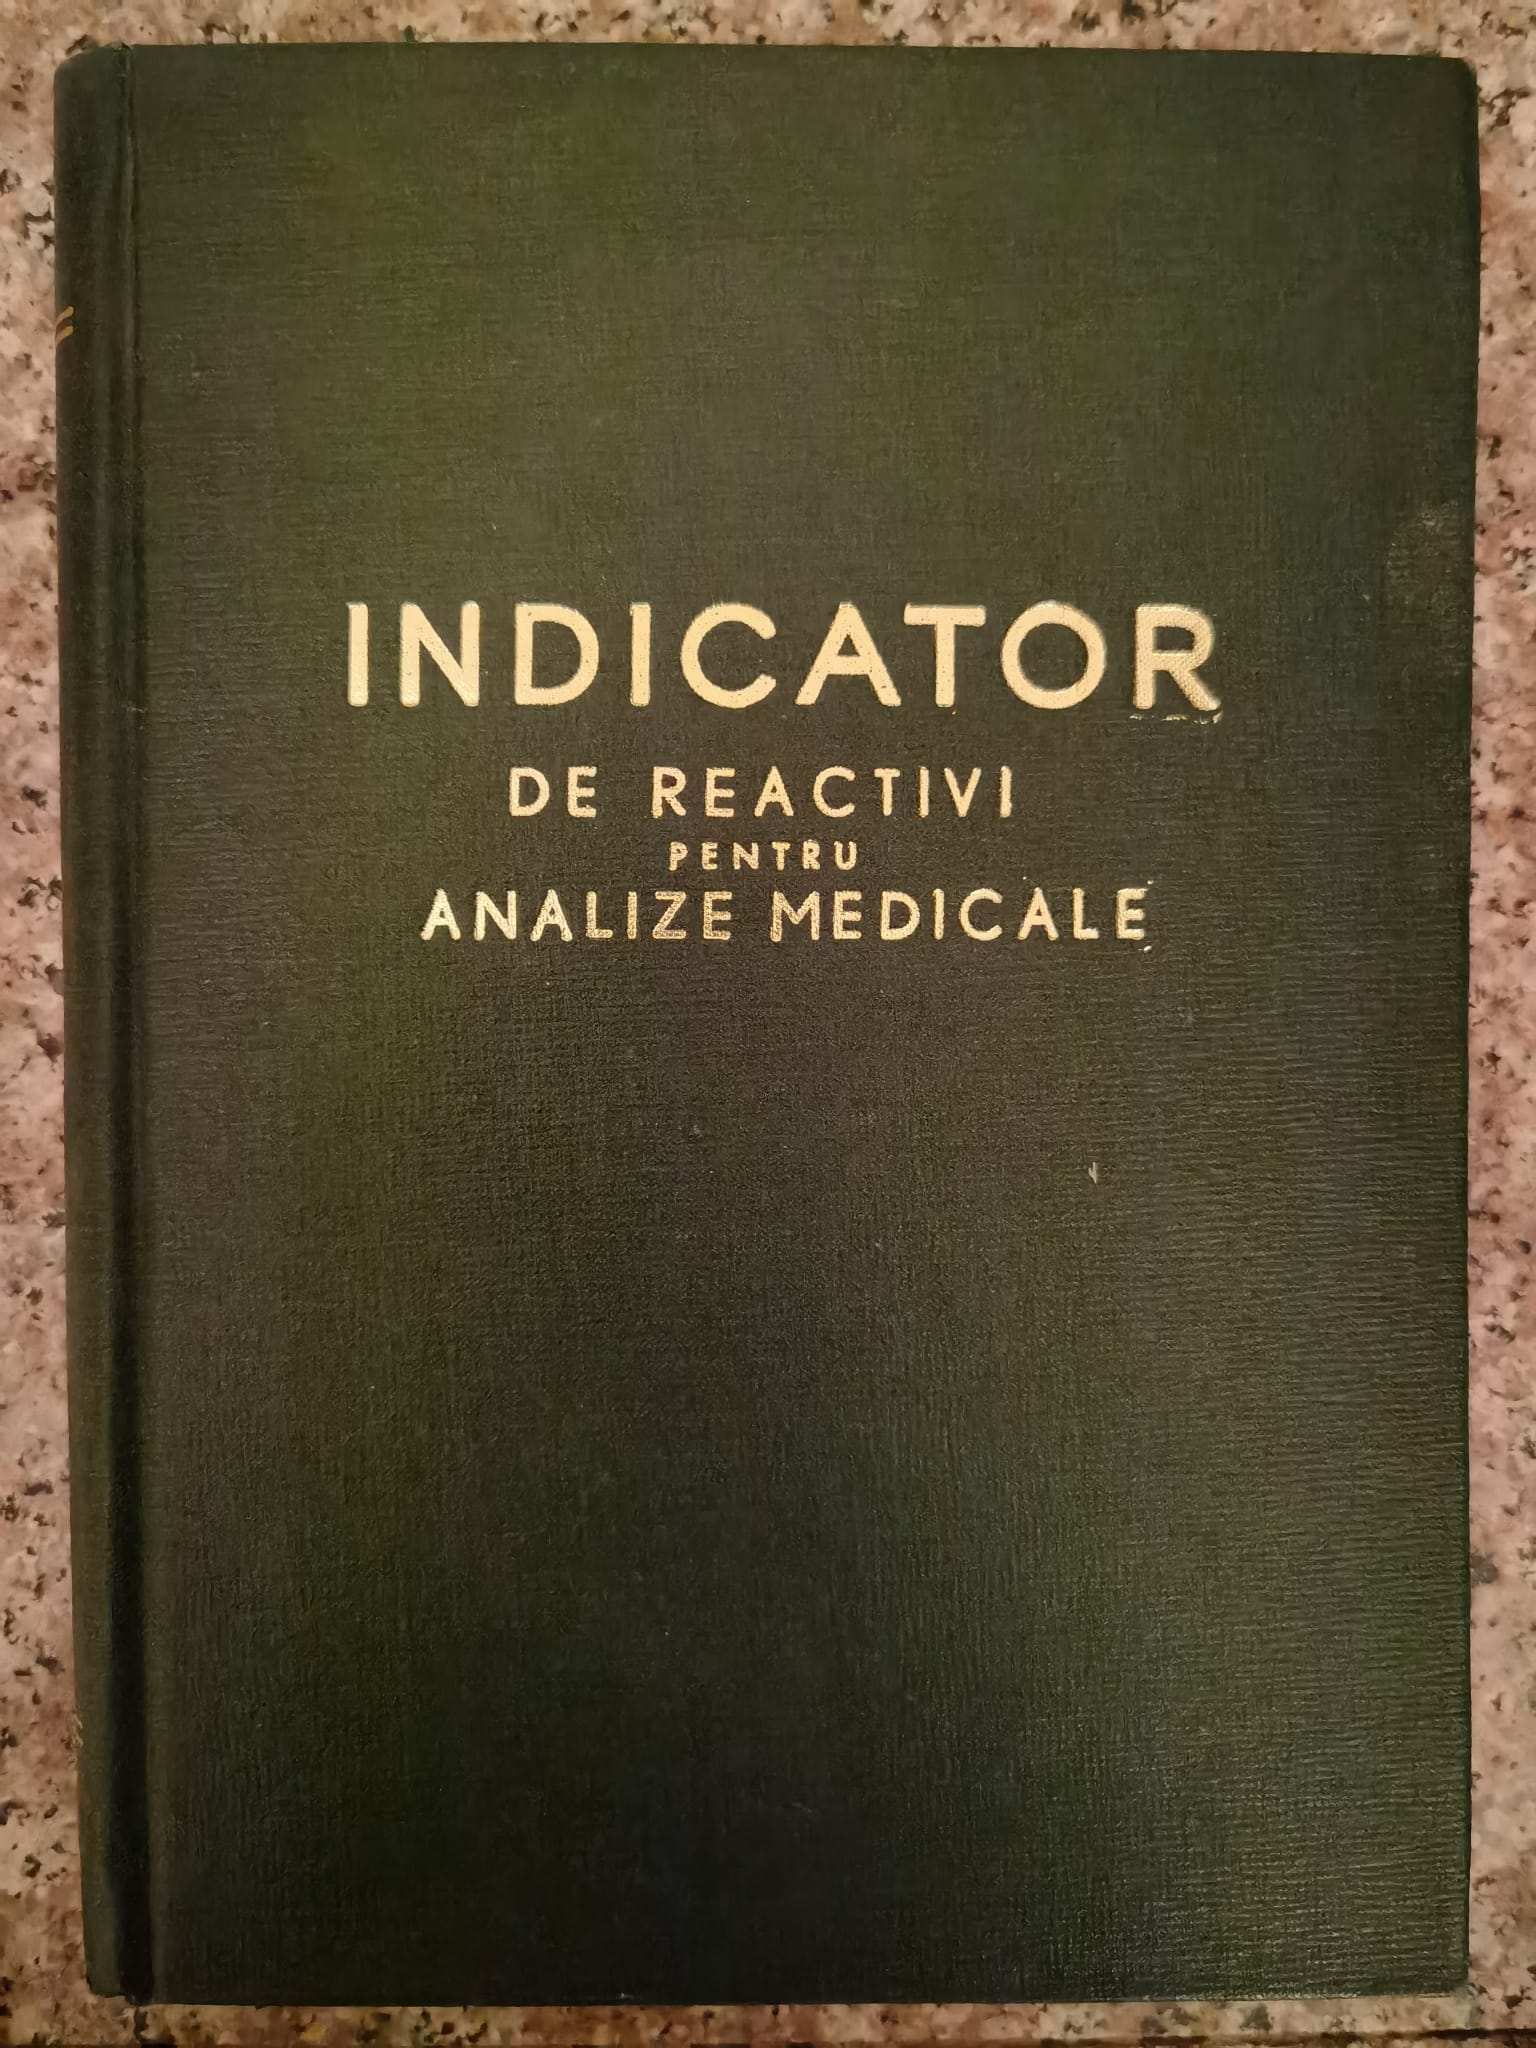 indicator de reactivi pentru analize medicale                                                        al. theodorescu, radu cancer                                                                        